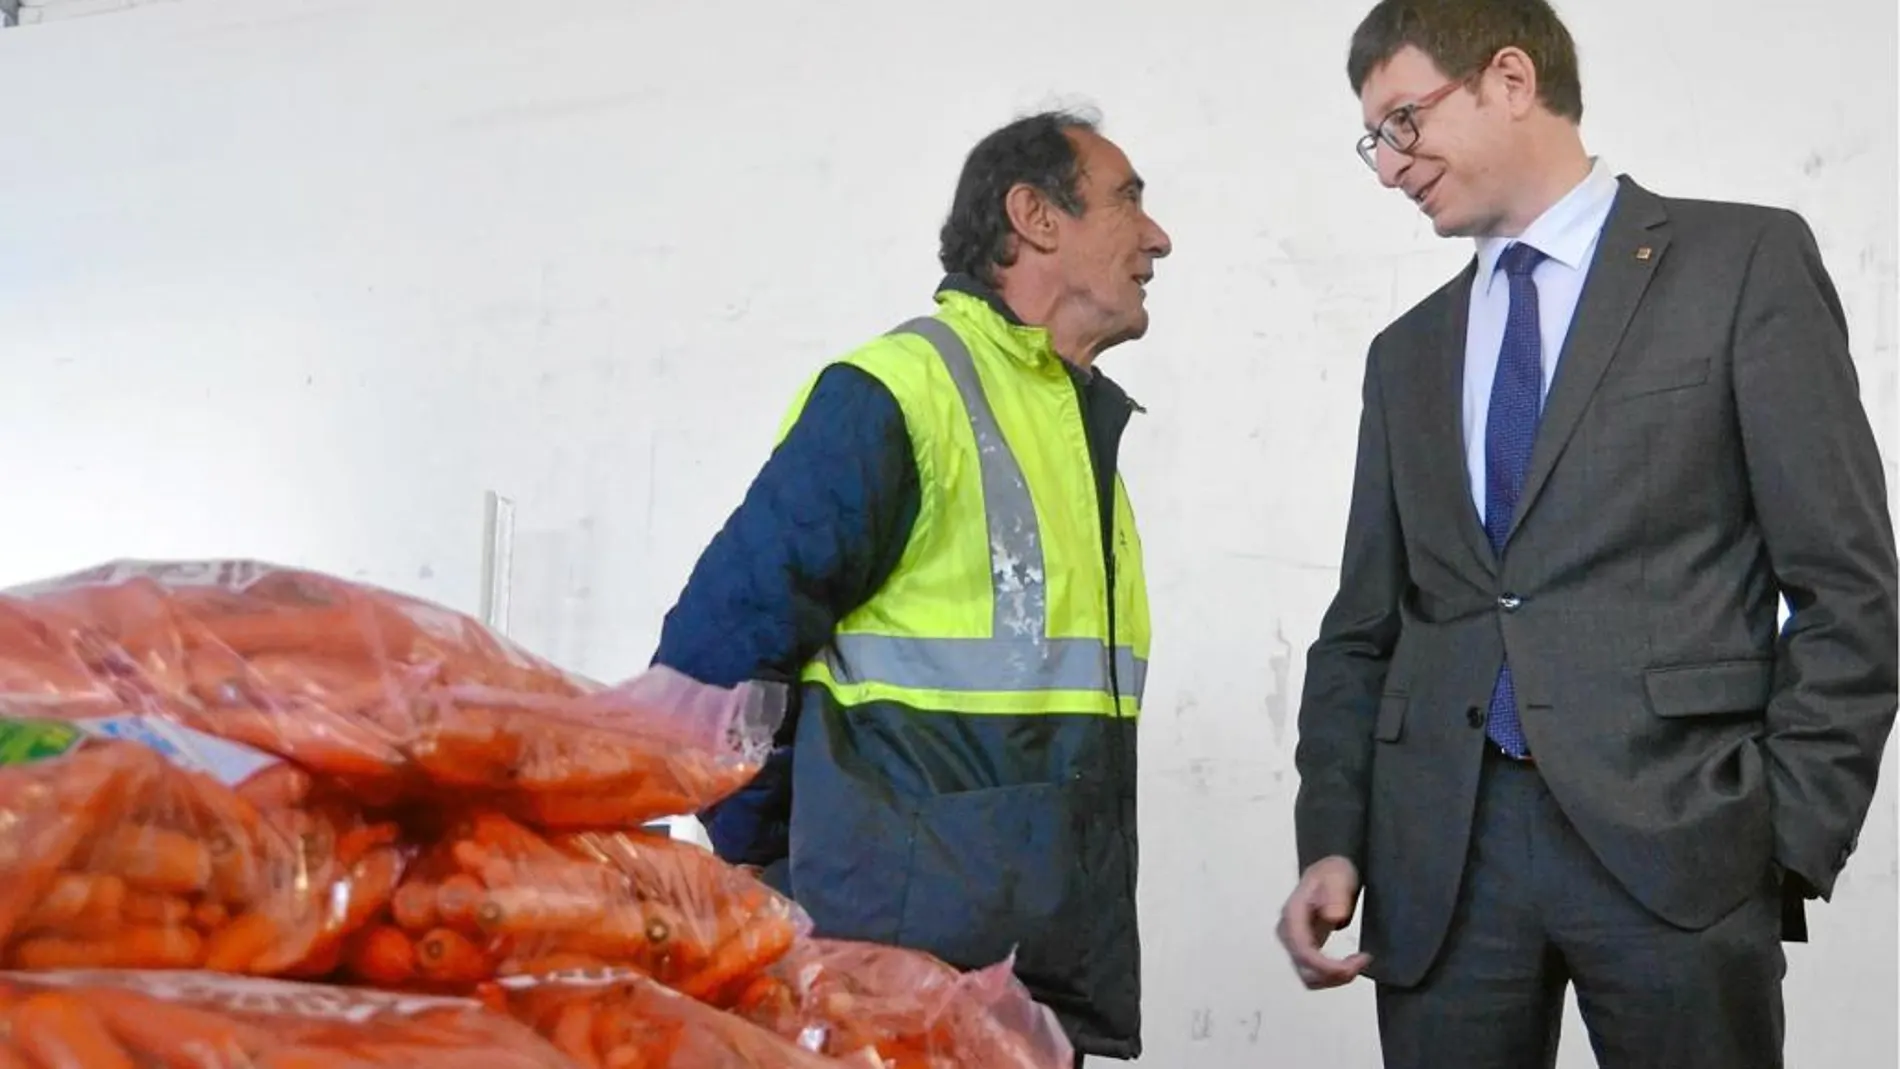 El conseller Carles Mundó presentó los datos en el Banco de los Alimentos